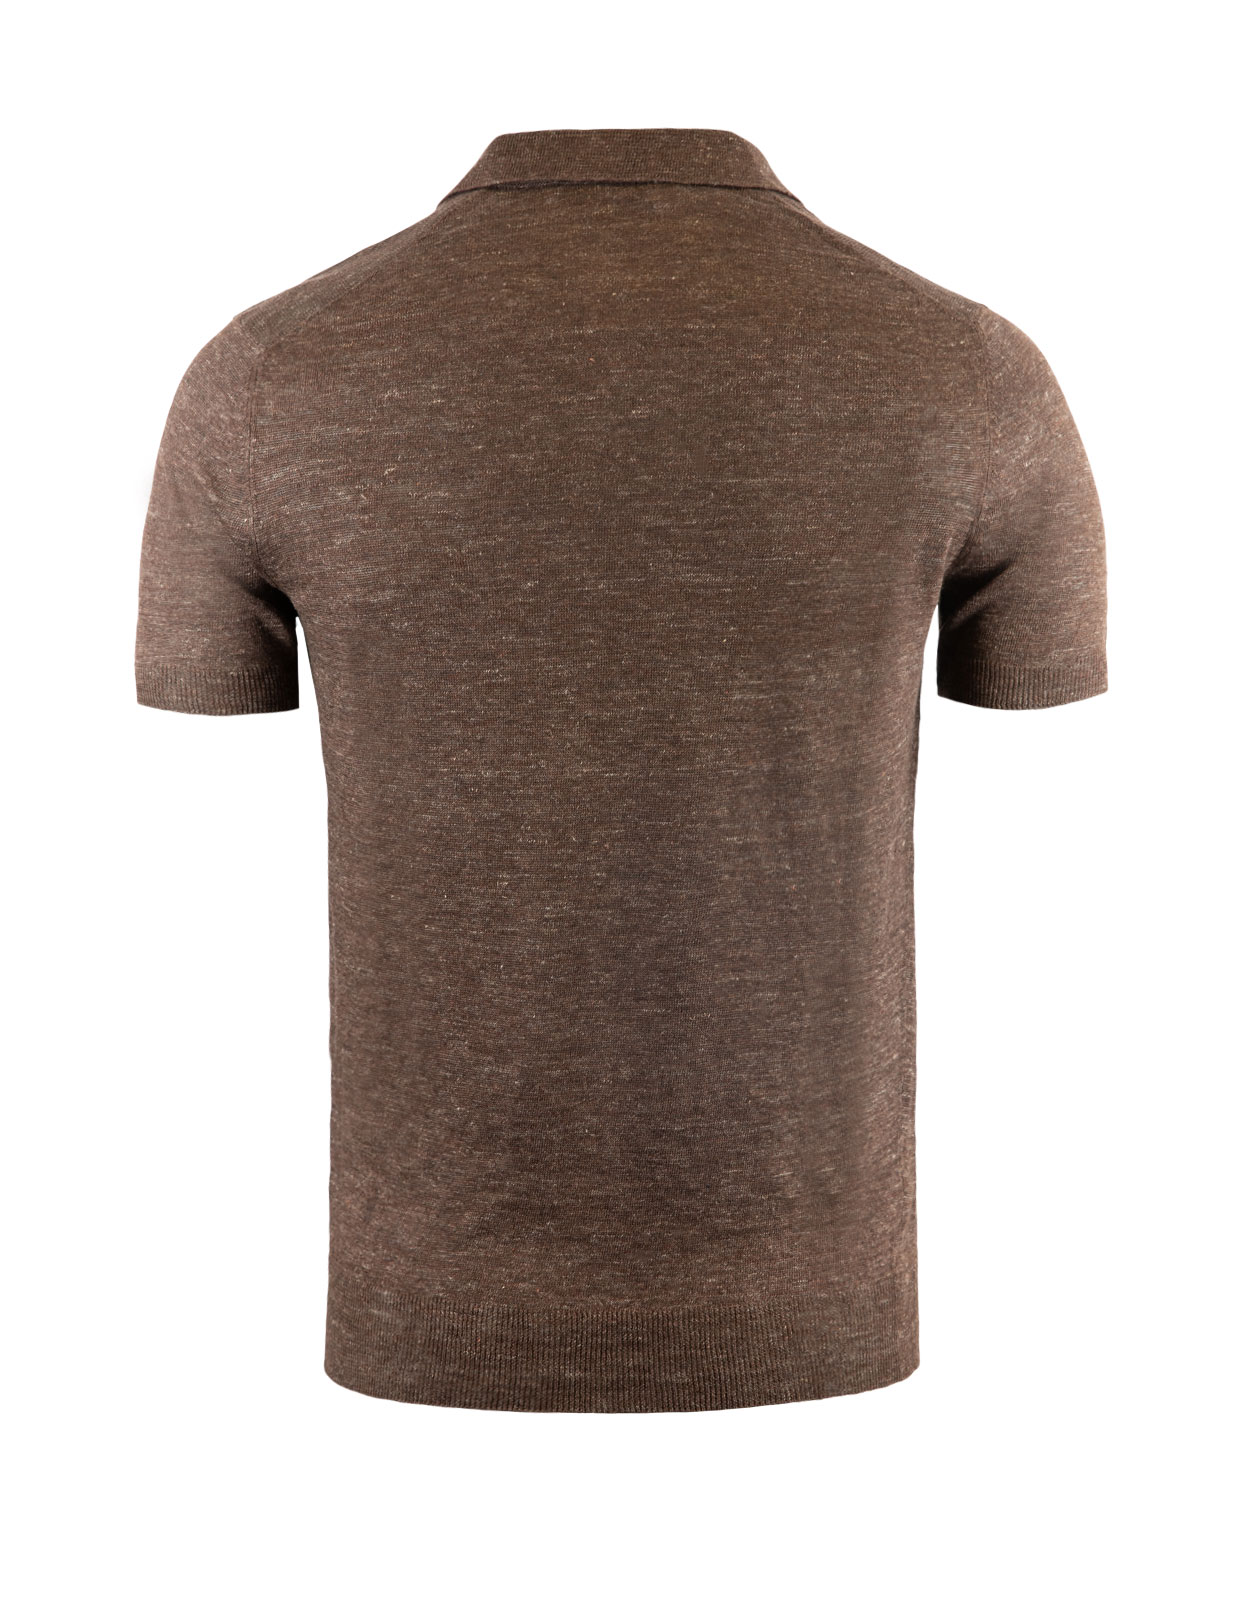 Polo Shirt Linen Brown